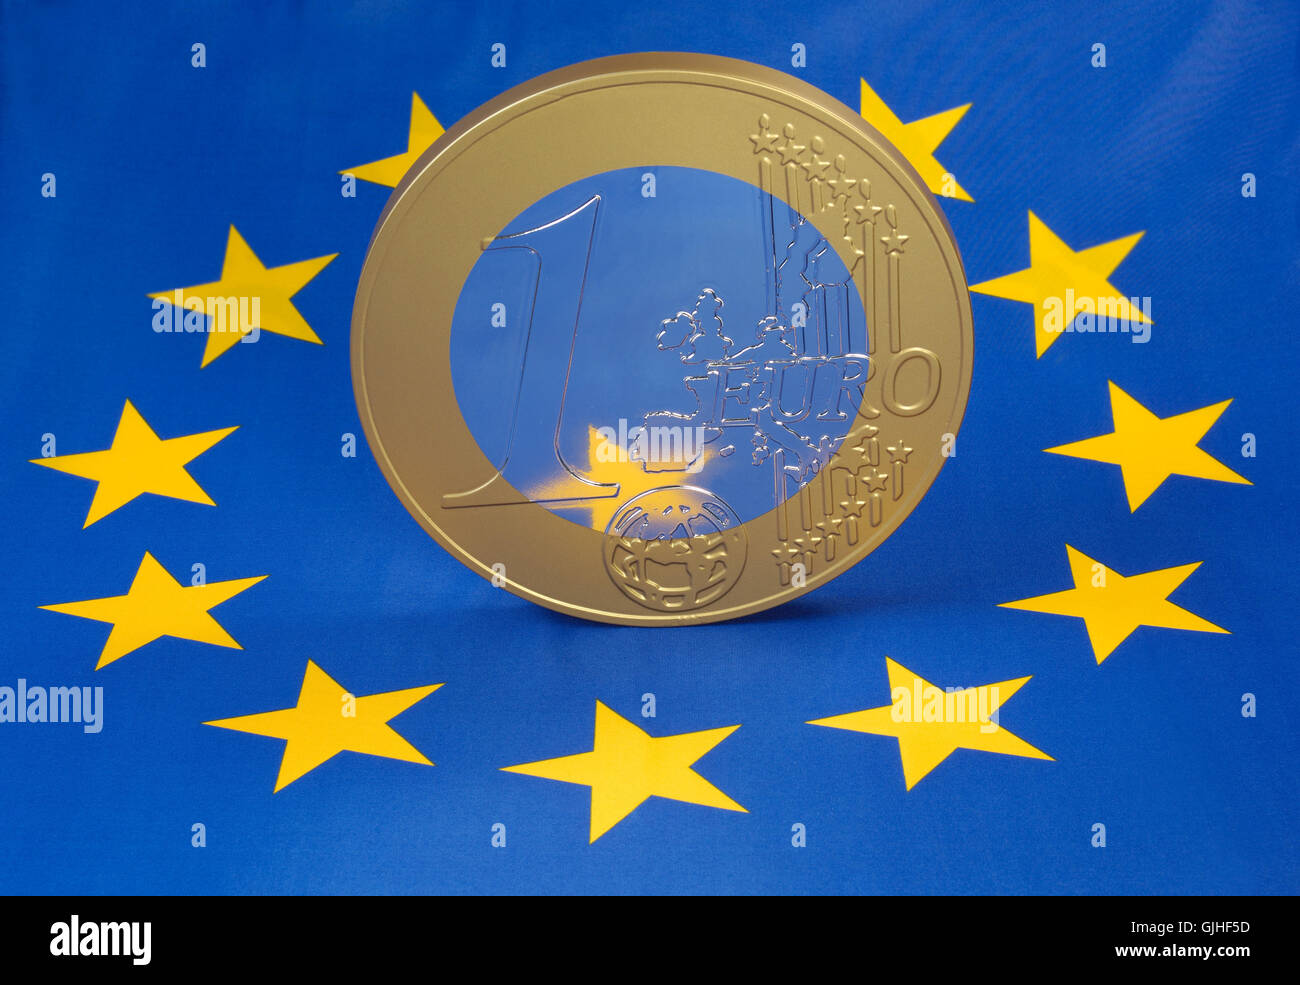 euro coin on the european flag Stock Photo